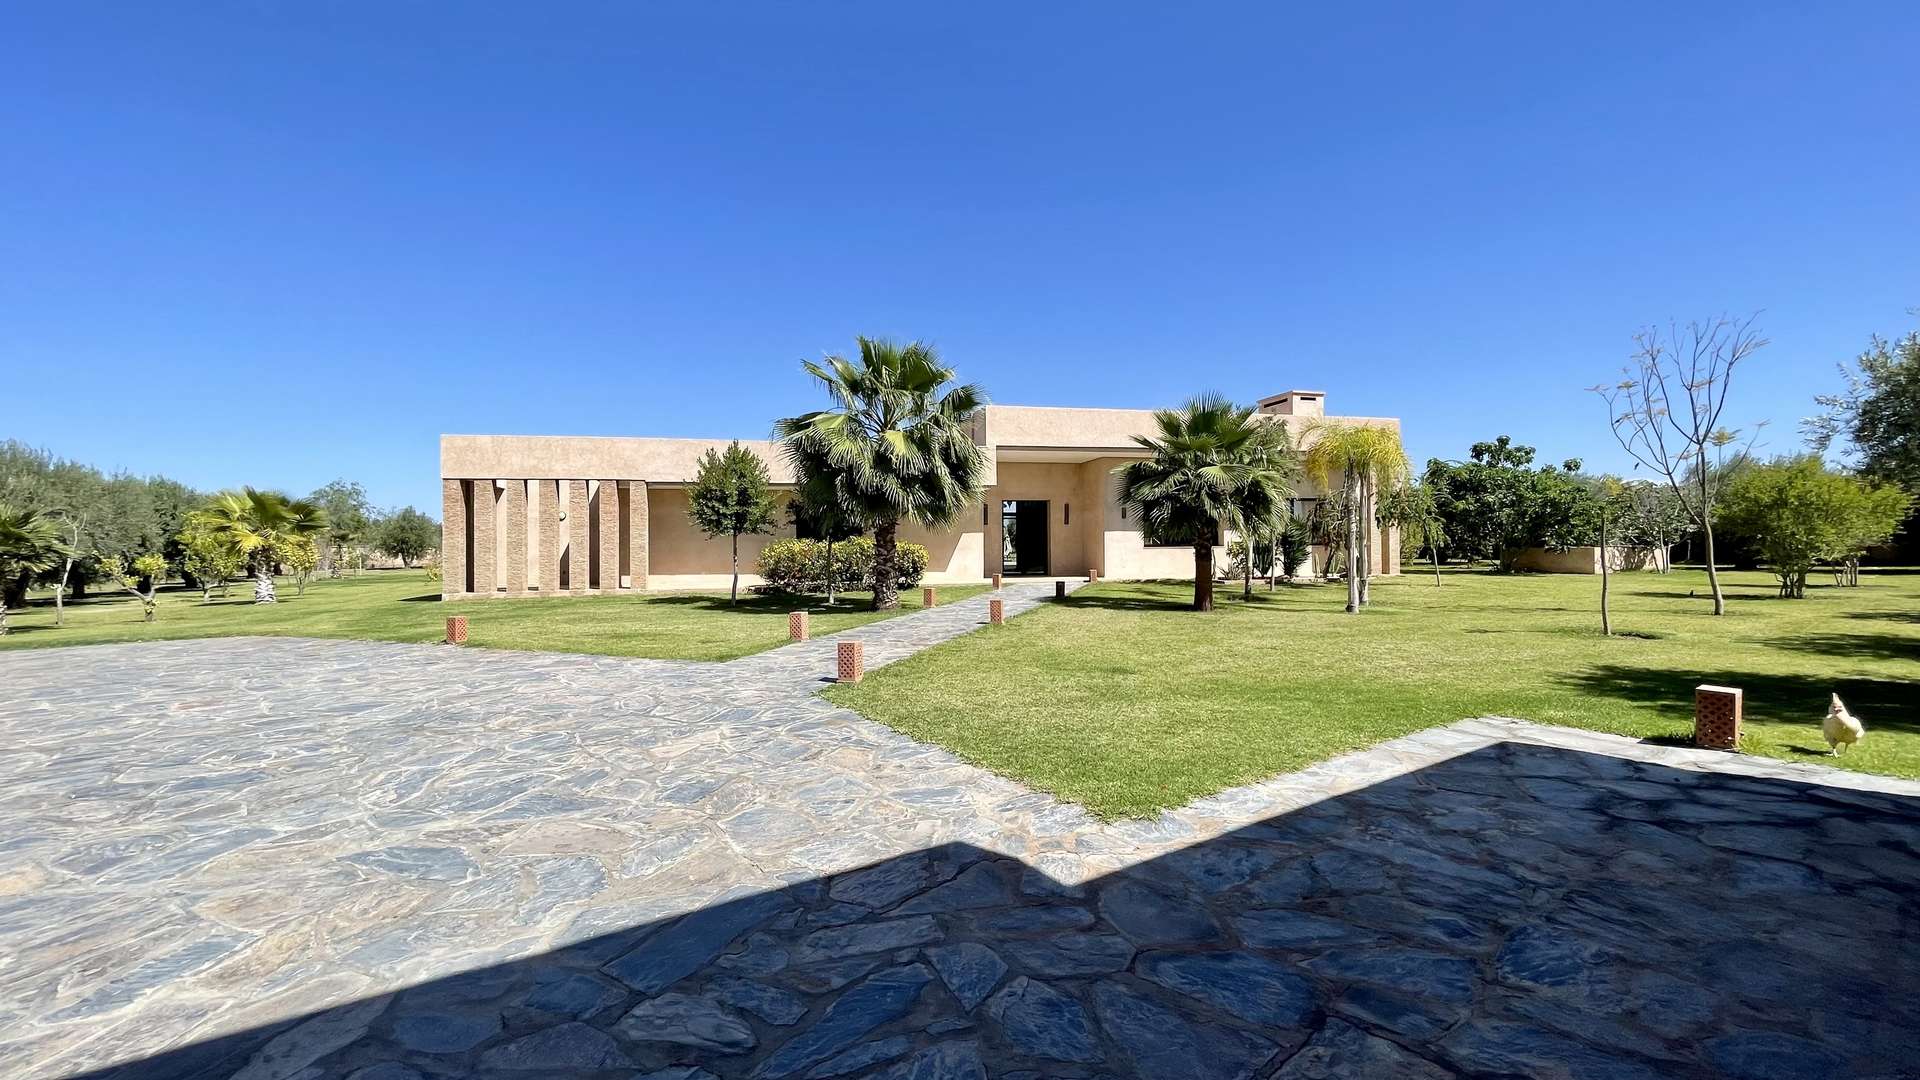 Location de vacances,Villa,Splendide Propriété privée de 5 suites sur un jardin de 6000 M2,Marrakech,Route d'Ouarzazate